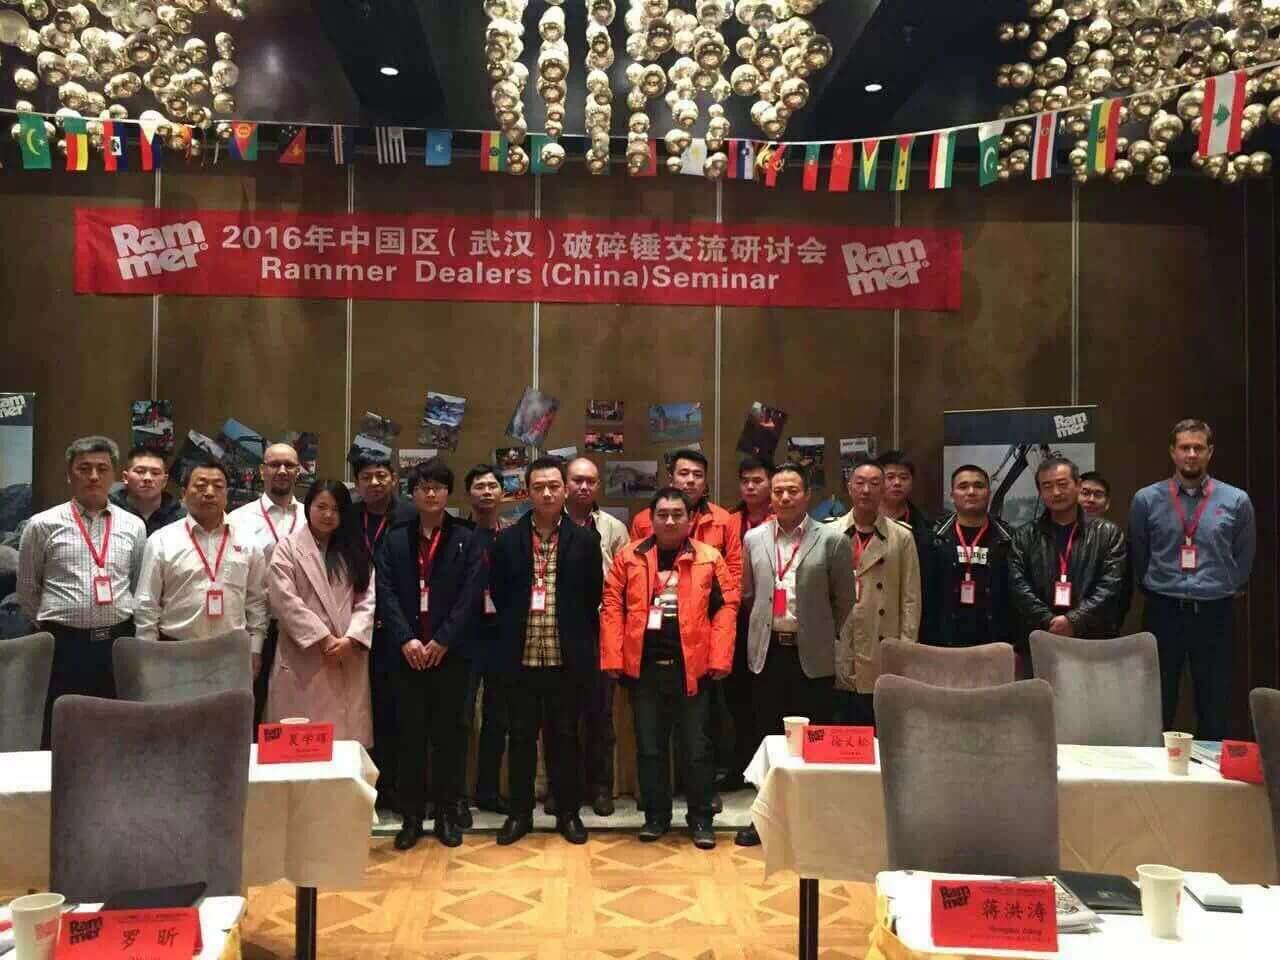 YZH приняла участие в китайском семинаре Ramme Dealers в 2016 году